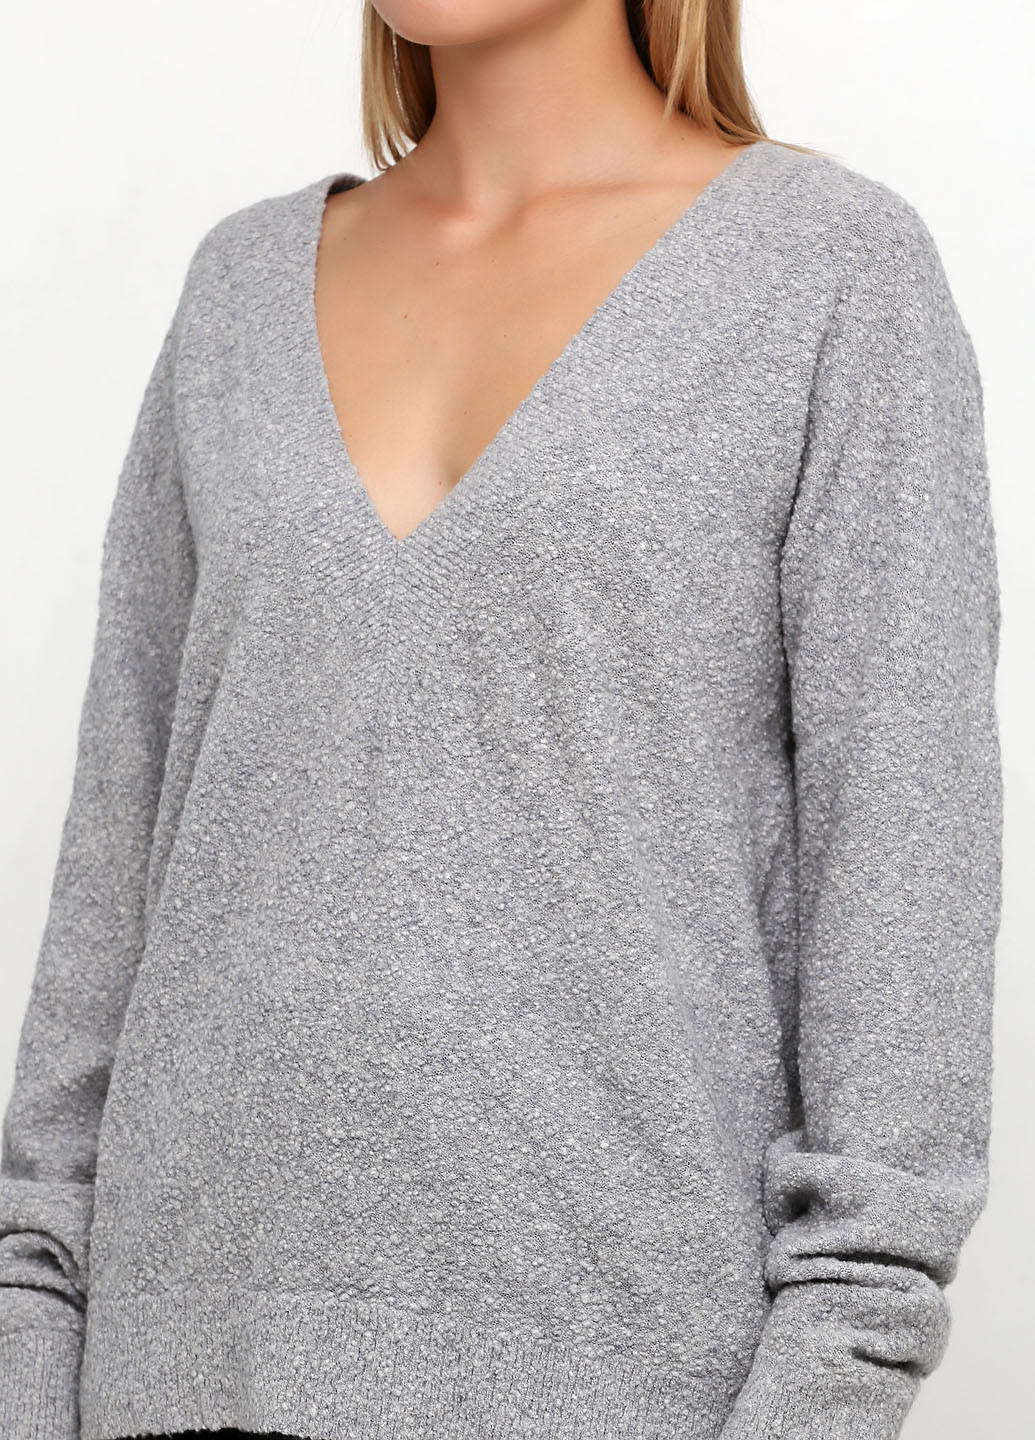 Серый демисезонный пуловер пуловер Cos